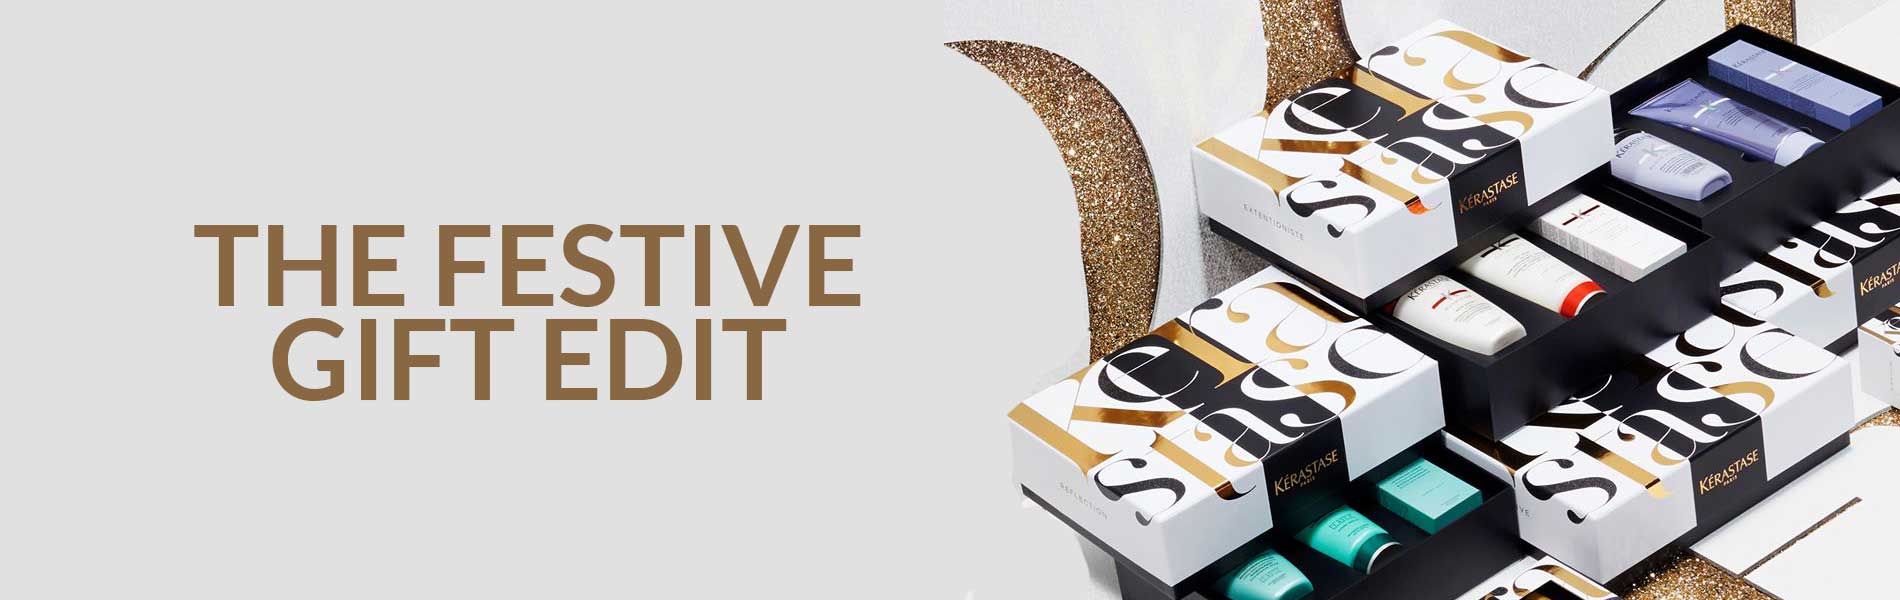 The Festive Gift Edit banner